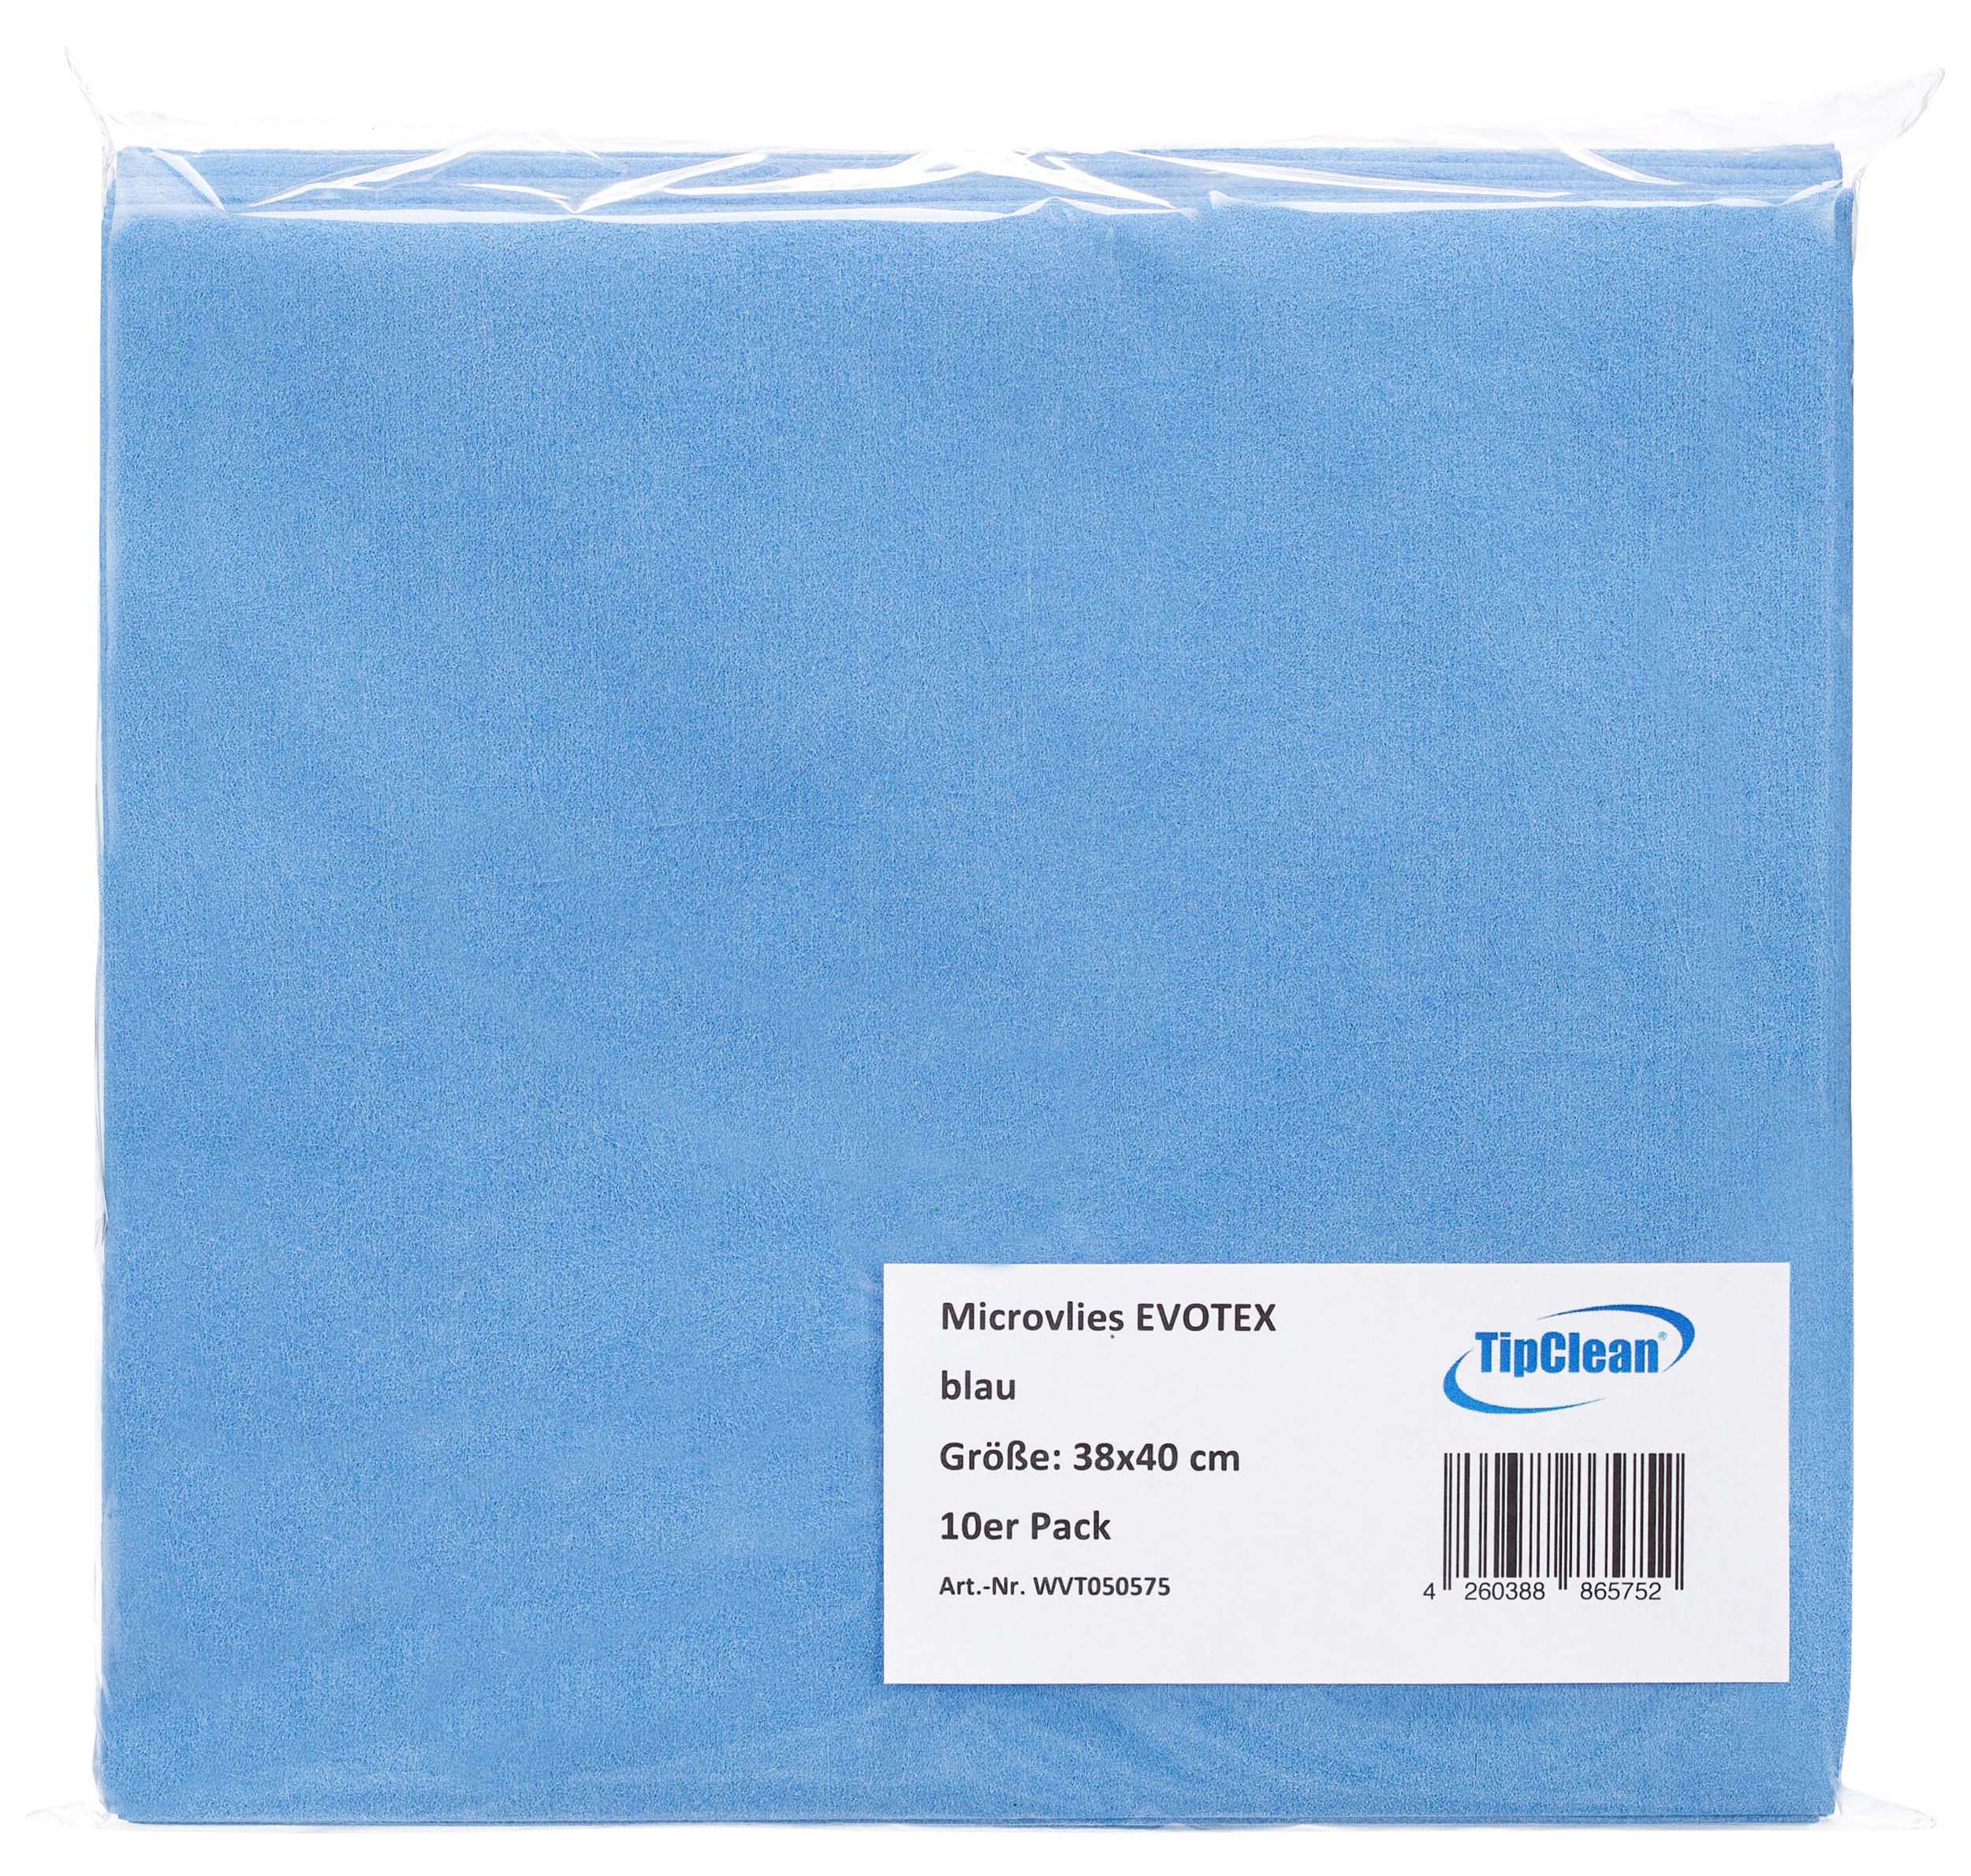 TipClean Microvlies EVOTEX blau 38 x 40 cm - 10er Pack